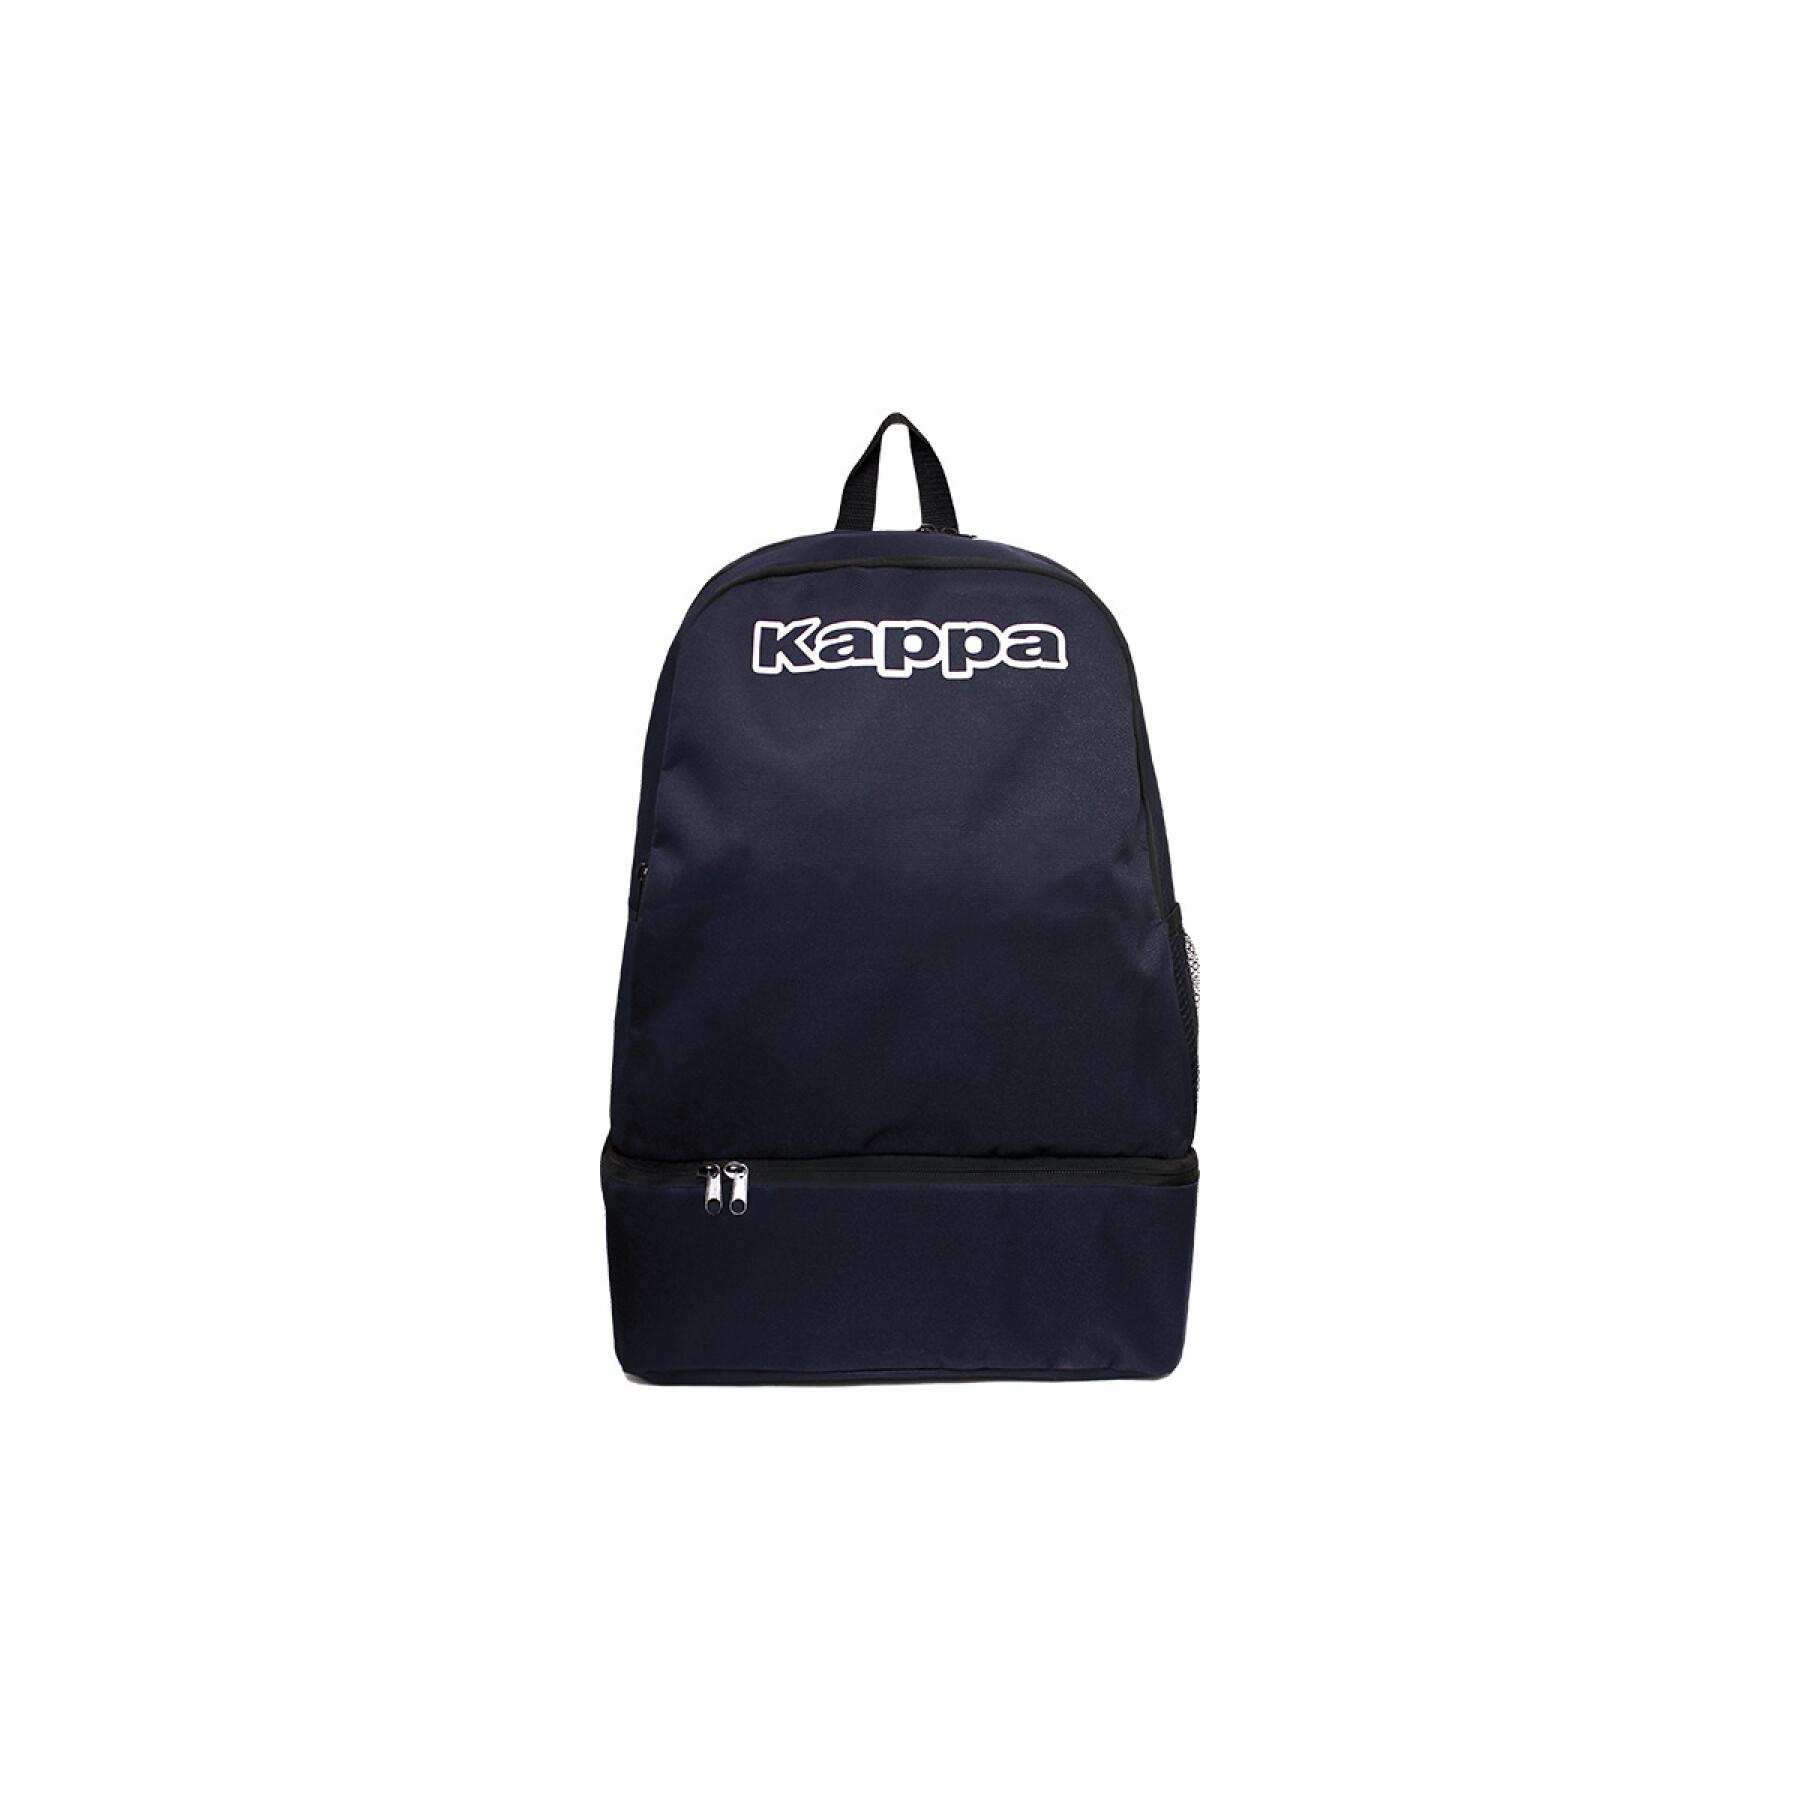 Backpack Kappa backpack